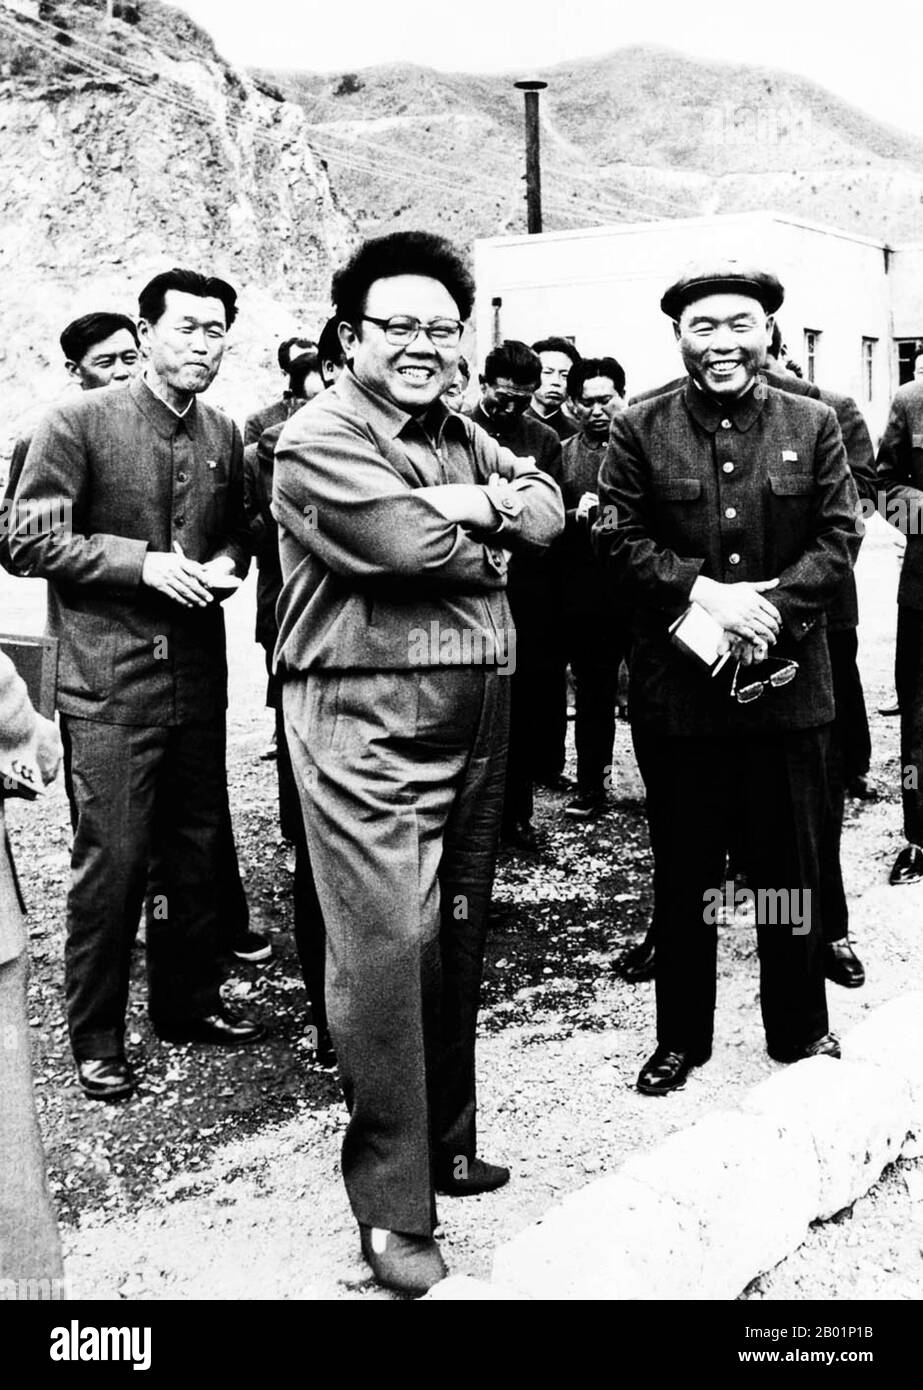 Corea: Leader nordcoreano Kim Jong il (16 febbraio 1941/1942 - 17 dicembre 2011) in un tour di ispezione in una miniera, due anni prima di succedere a suo padre, Kim il Sung, come leader supremo, 1992. Kim Jong-il è stato il leader supremo della Corea del Nord (RPDC) dal 1994 al 2011. Succedette a suo padre e fondatore della RPDC Kim il-sung dopo la morte del vecchio Kim nel 1994. Kim Jong-il era il segretario generale del Partito dei lavoratori di Corea, presidente della Commissione nazionale di difesa della Corea del Nord e il comandante supremo dell'esercito popolare coreano, il quarto esercito permanente più grande del mondo. Foto Stock